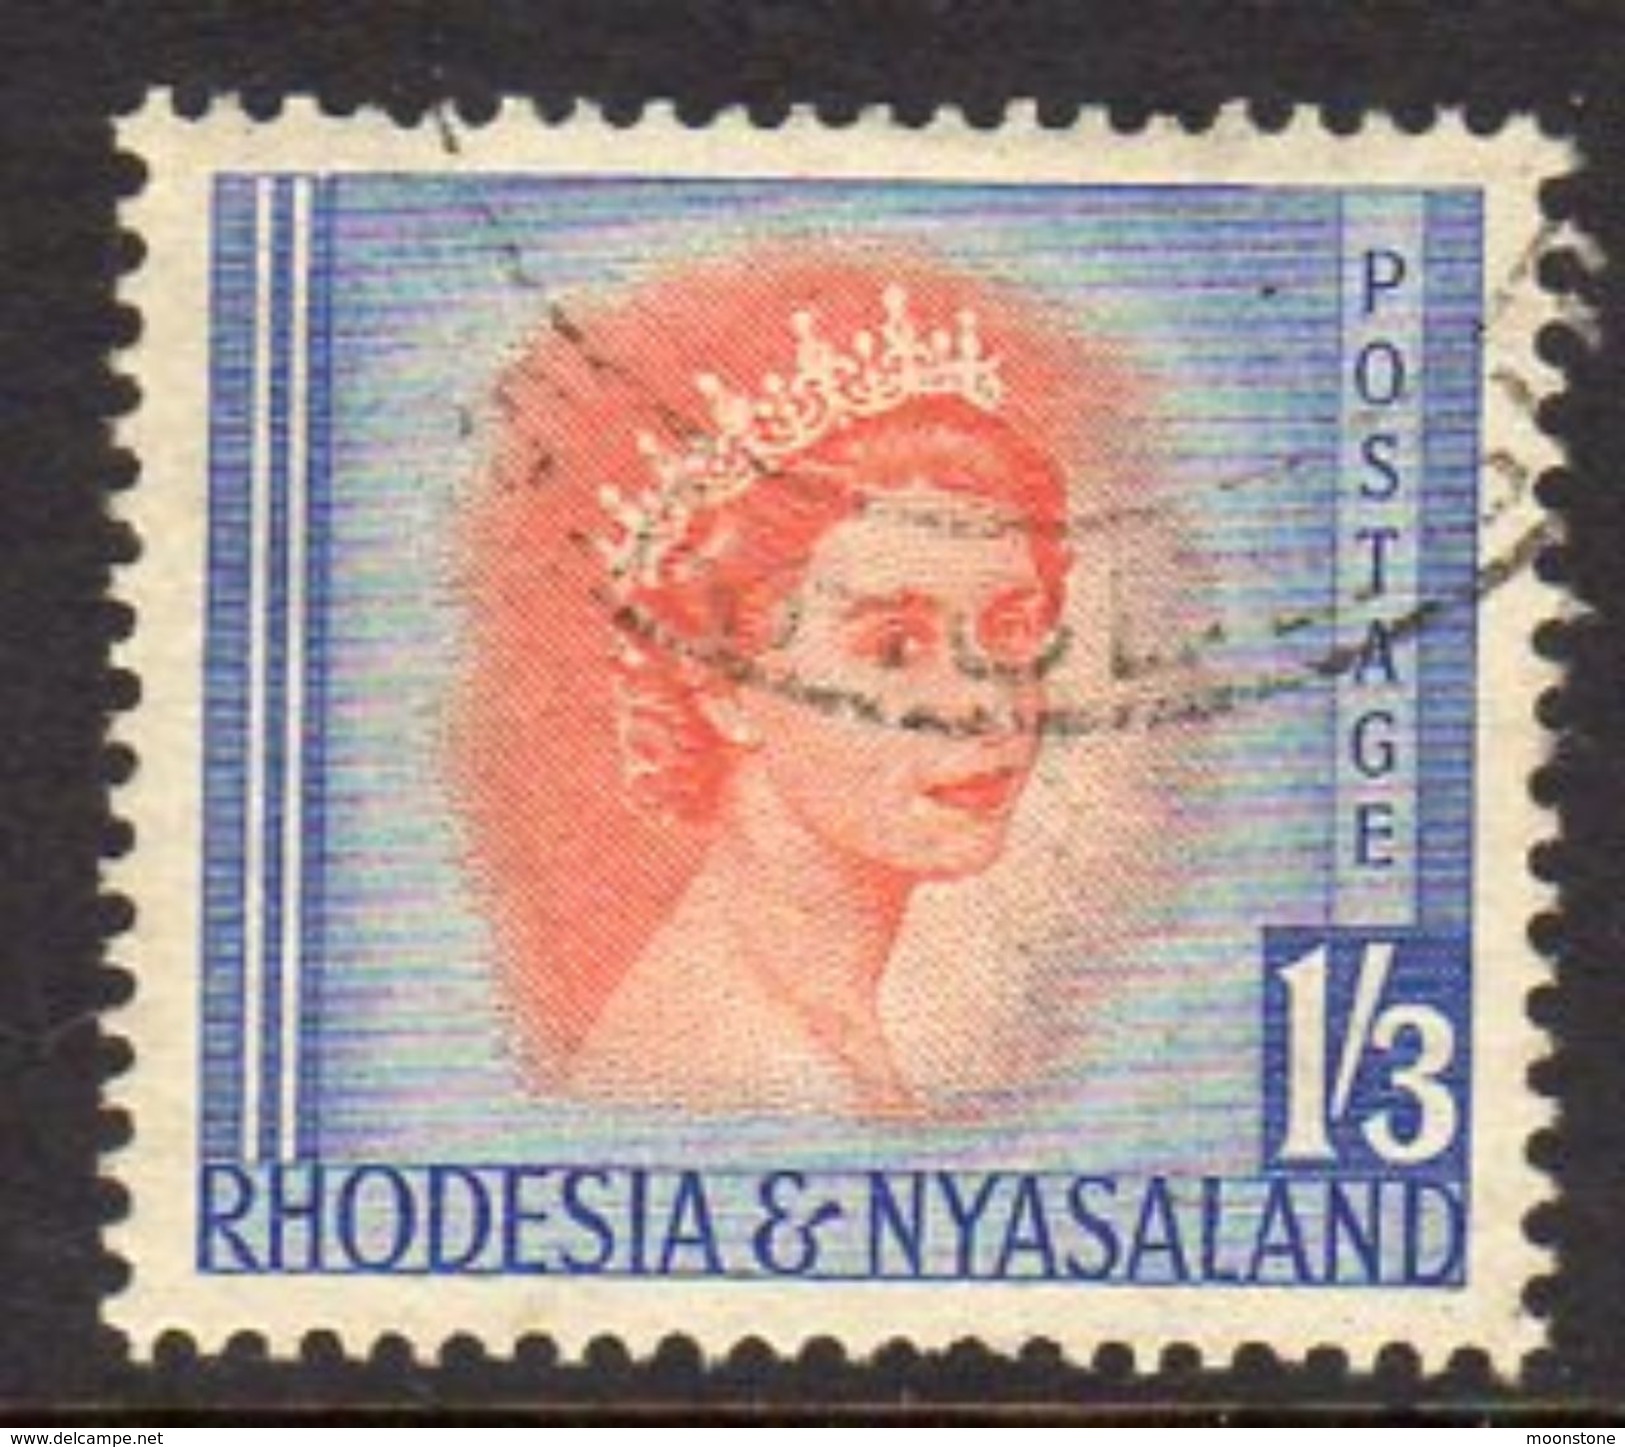 Rhodesia & Nyasaland 1954 1/3d Definitive, Used, SG 10 (BA) - Rhodesien & Nyasaland (1954-1963)